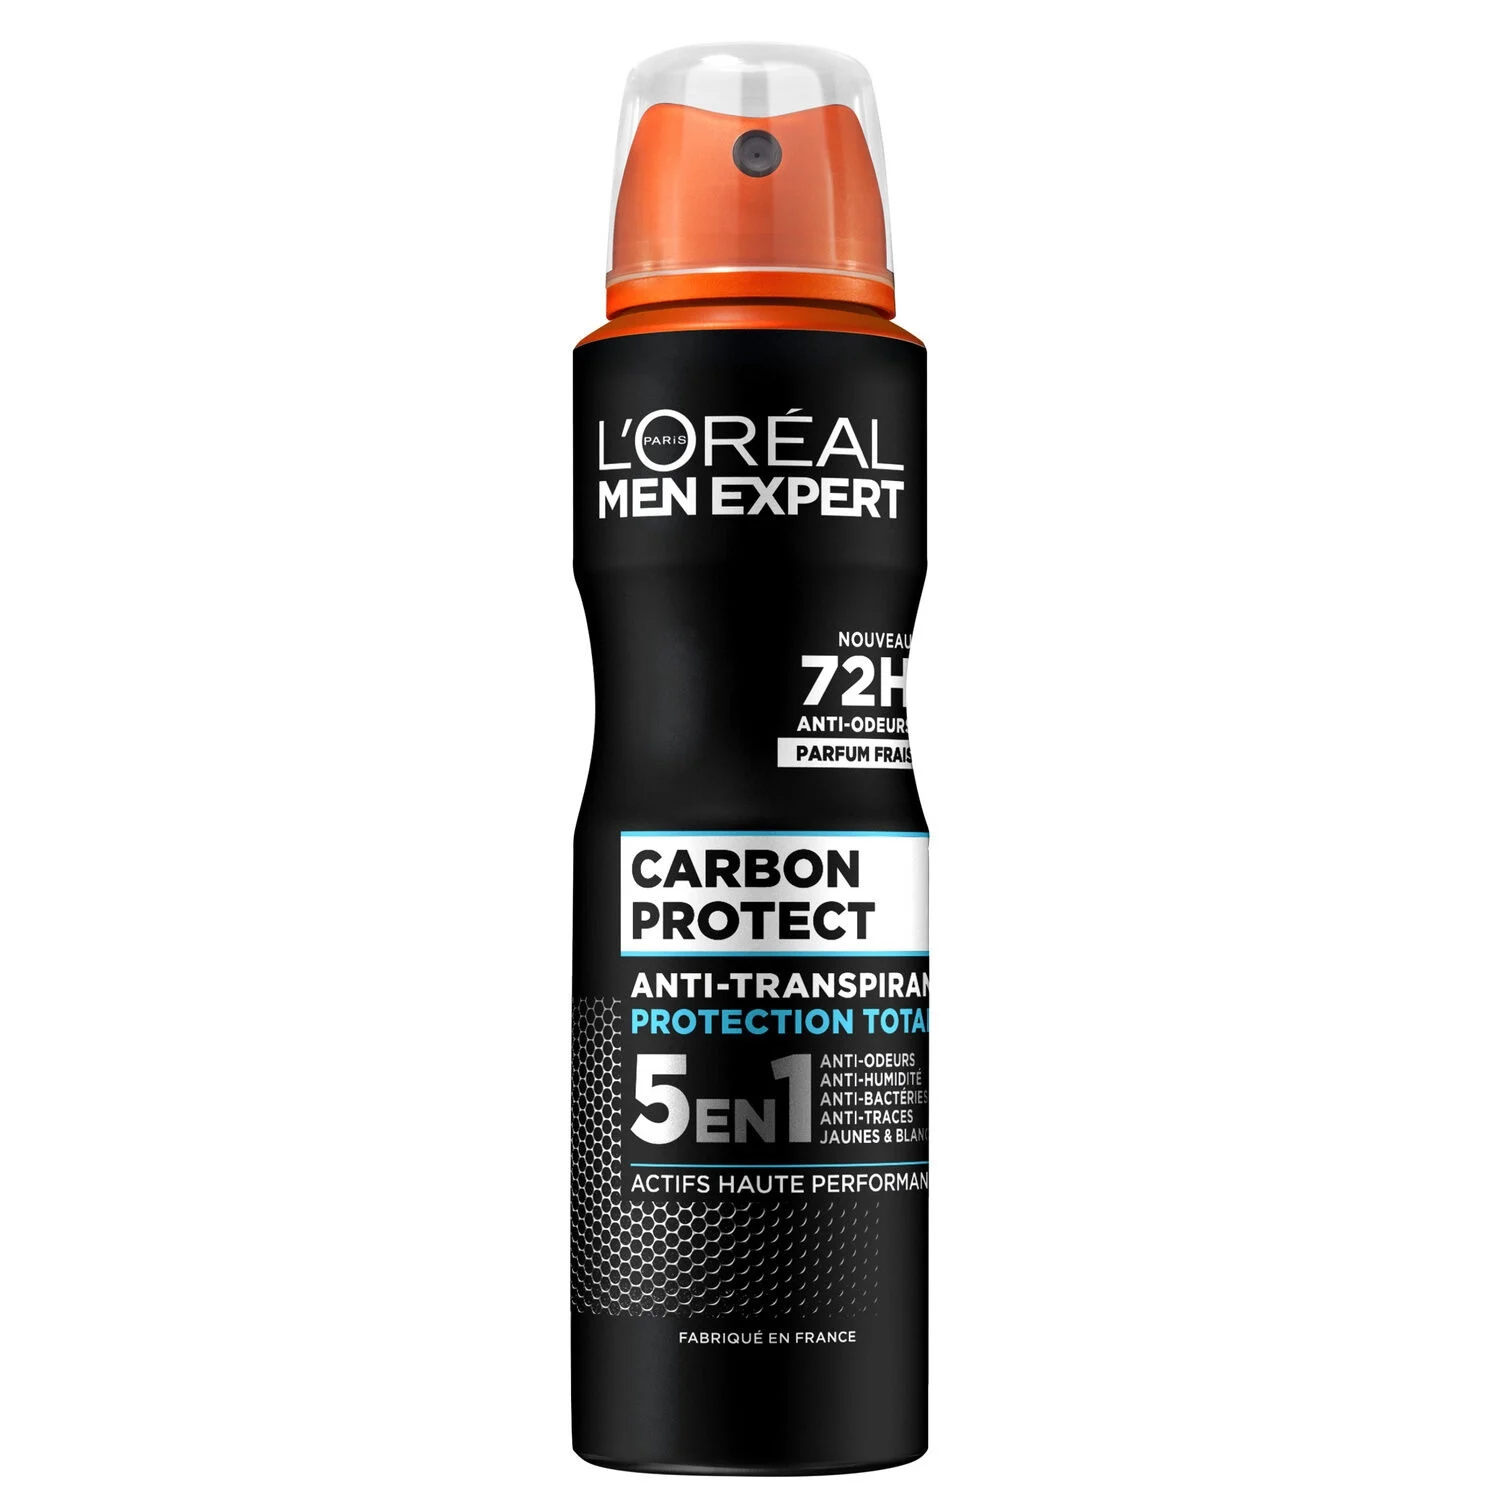 Déodorant Men Expert Spay 5en1 Carbon Protect, 150ml - L'ORÉAL